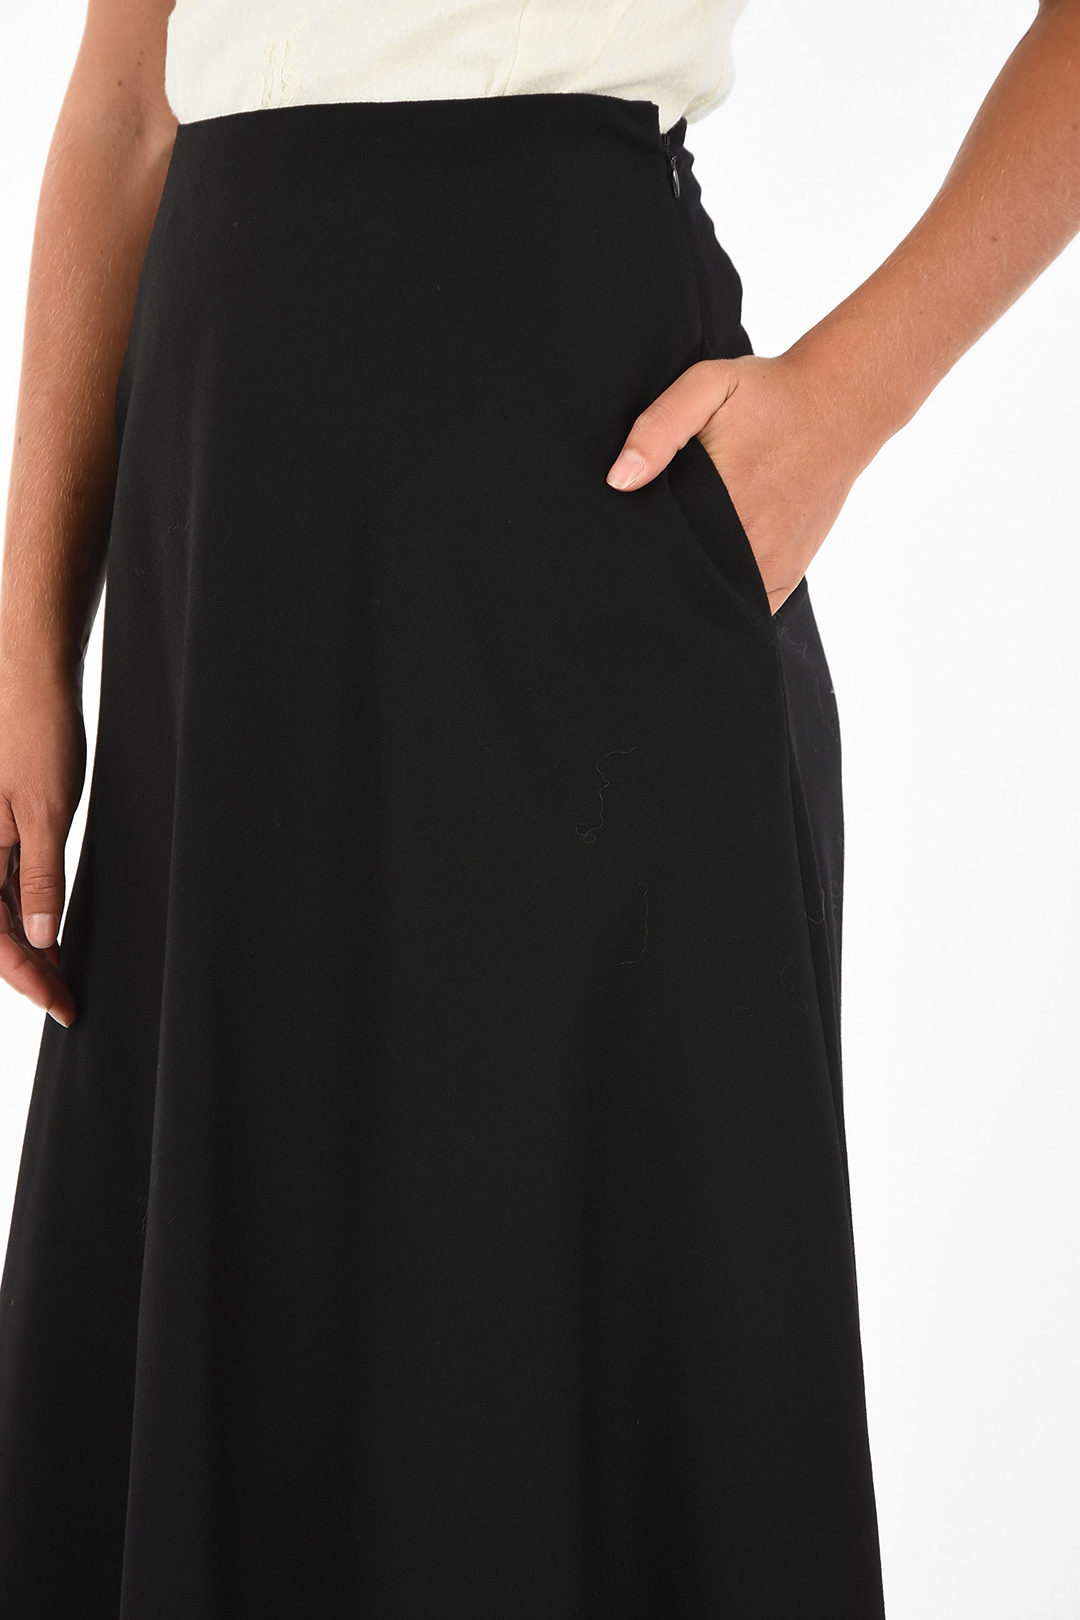 Celine asymmetrical skirt women - Glamood Outlet